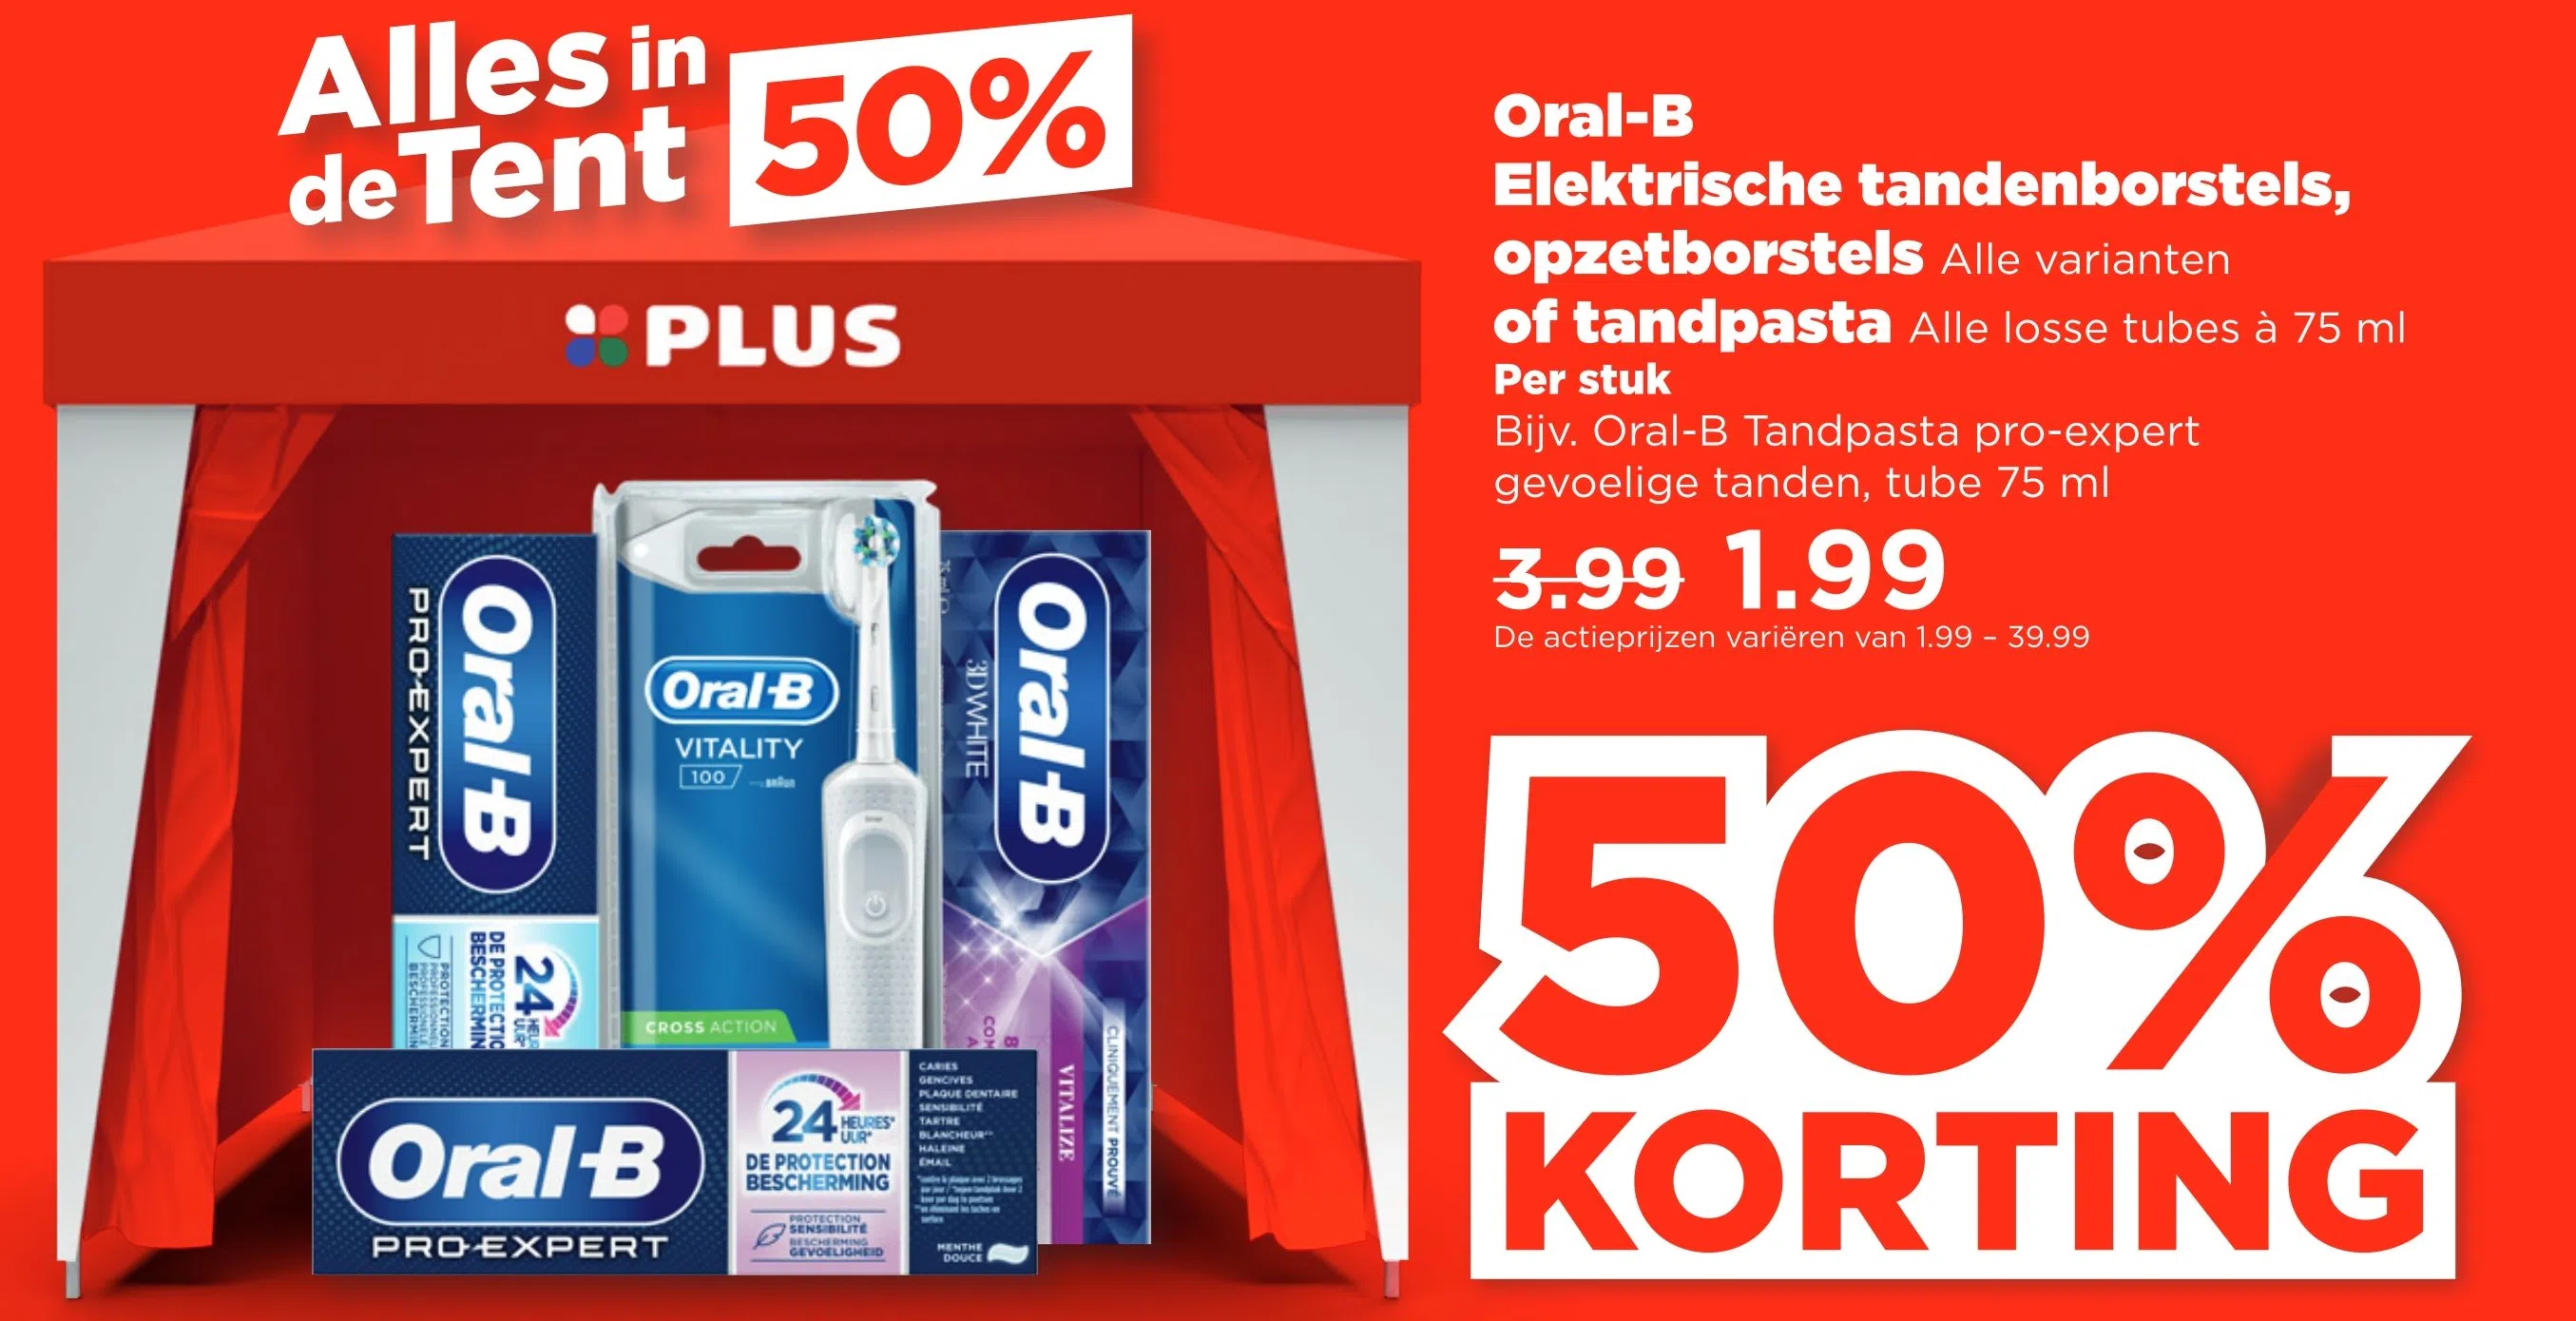 Voorman Broederschap hop Supermarkt aanbieding in Looiakkers: Oral-B Elektrische tandenborstels,  opzetborstels, 50% korting - Oozo.nl